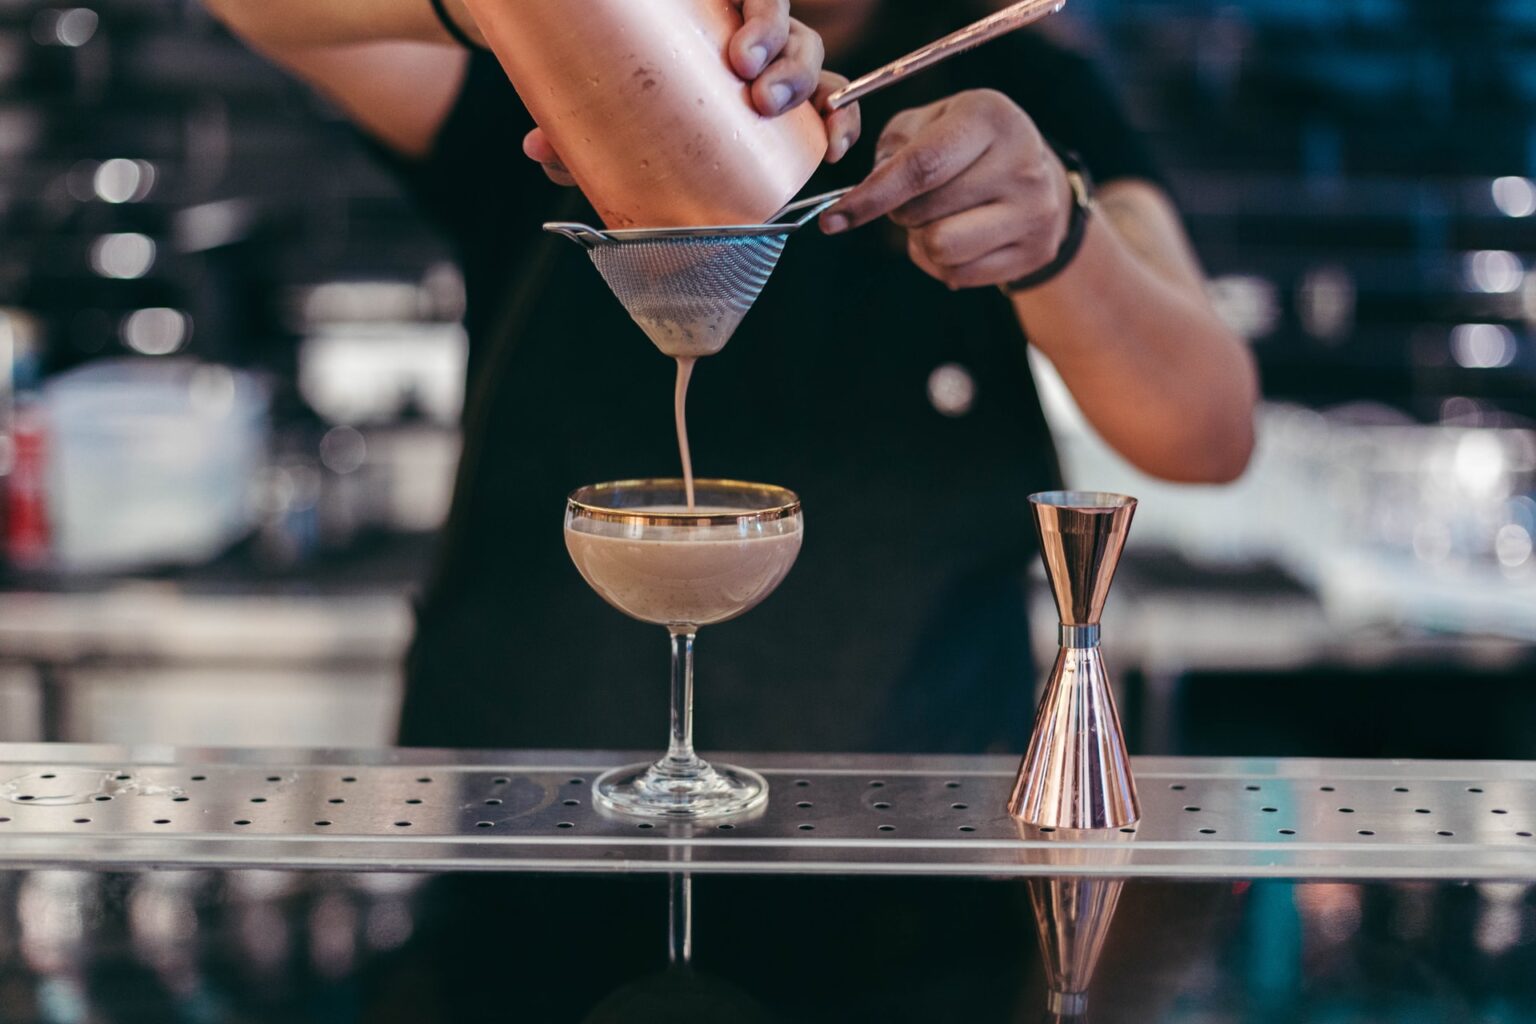 precificação de cocktails sendo preparado por bartender